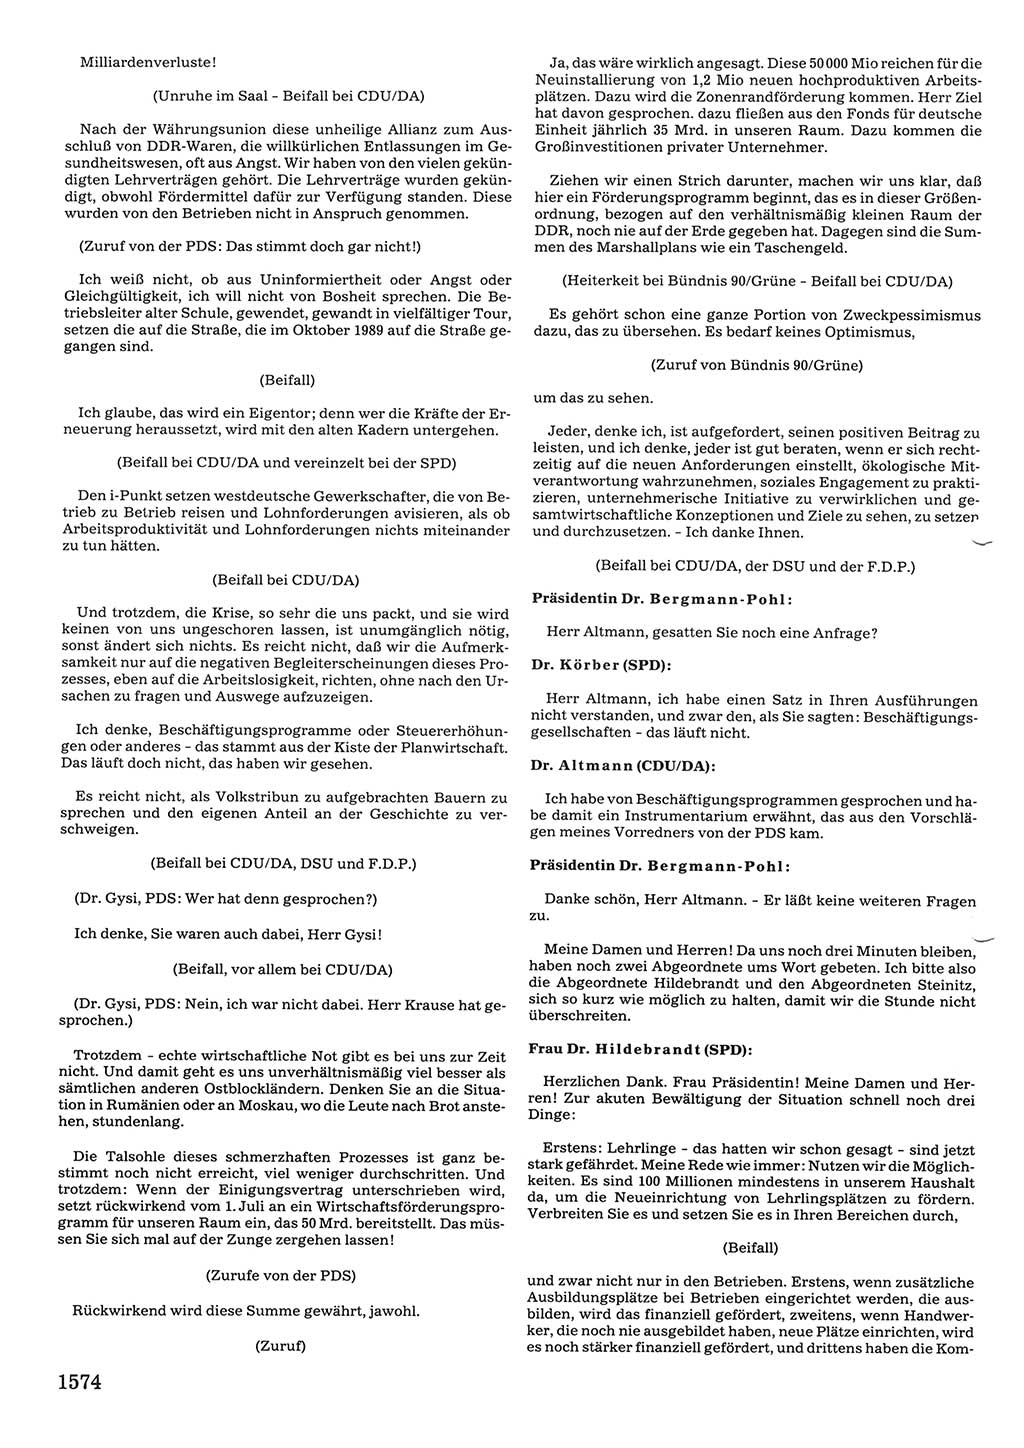 Tagungen der Volkskammer (VK) der Deutschen Demokratischen Republik (DDR), 10. Wahlperiode 1990, Seite 1574 (VK. DDR 10. WP. 1990, Prot. Tg. 1-38, 5.4.-2.10.1990, S. 1574)